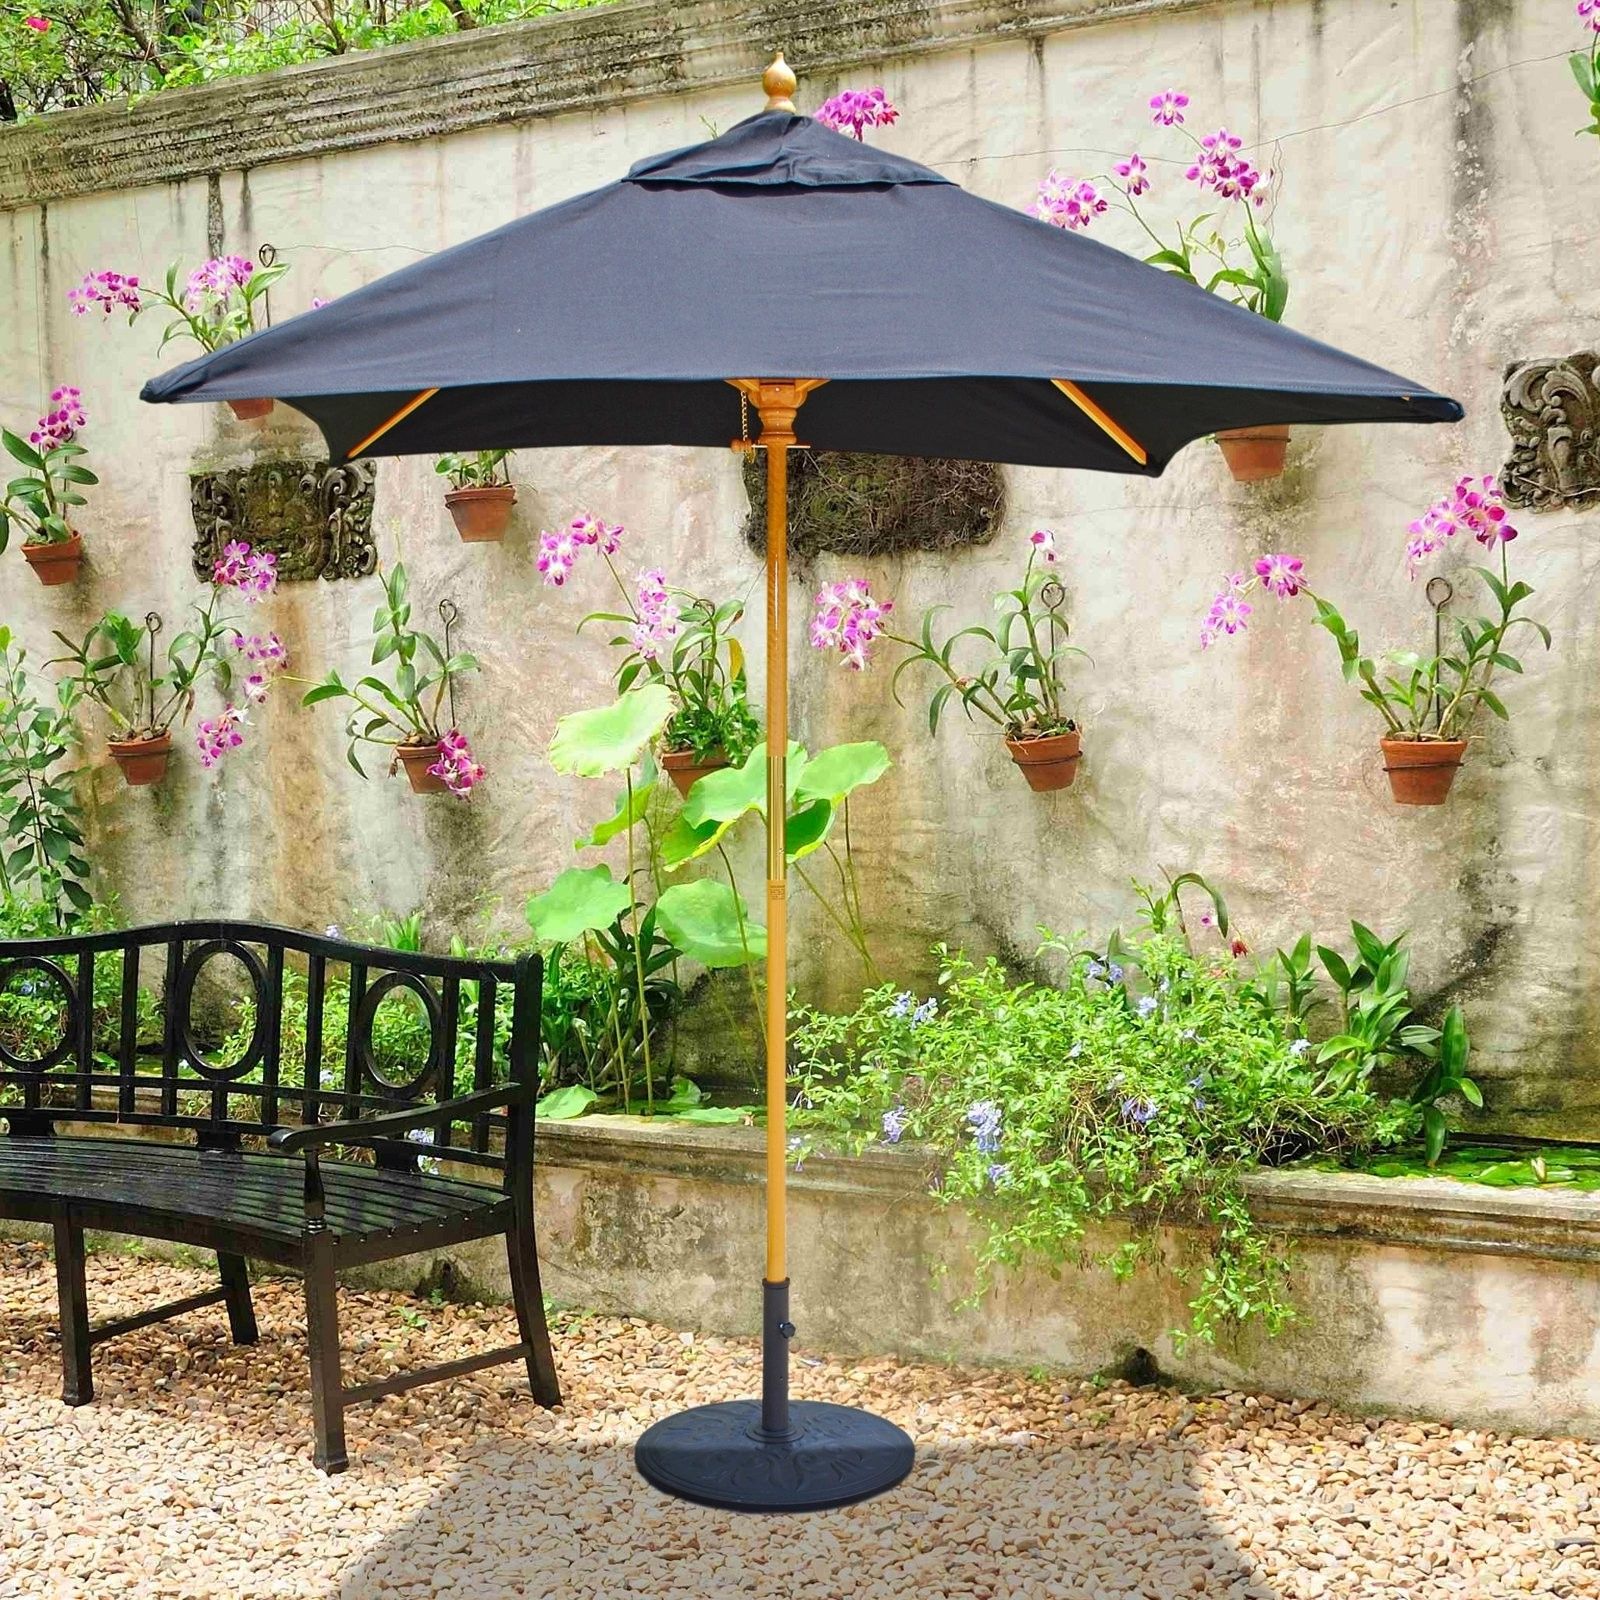 Square Sunbrella Patio Umbrellas Regarding 2018 Galtech Sunbrella 6 X 6 Ft Wood Square Patio Umbrella Patio (View 16 of 20)